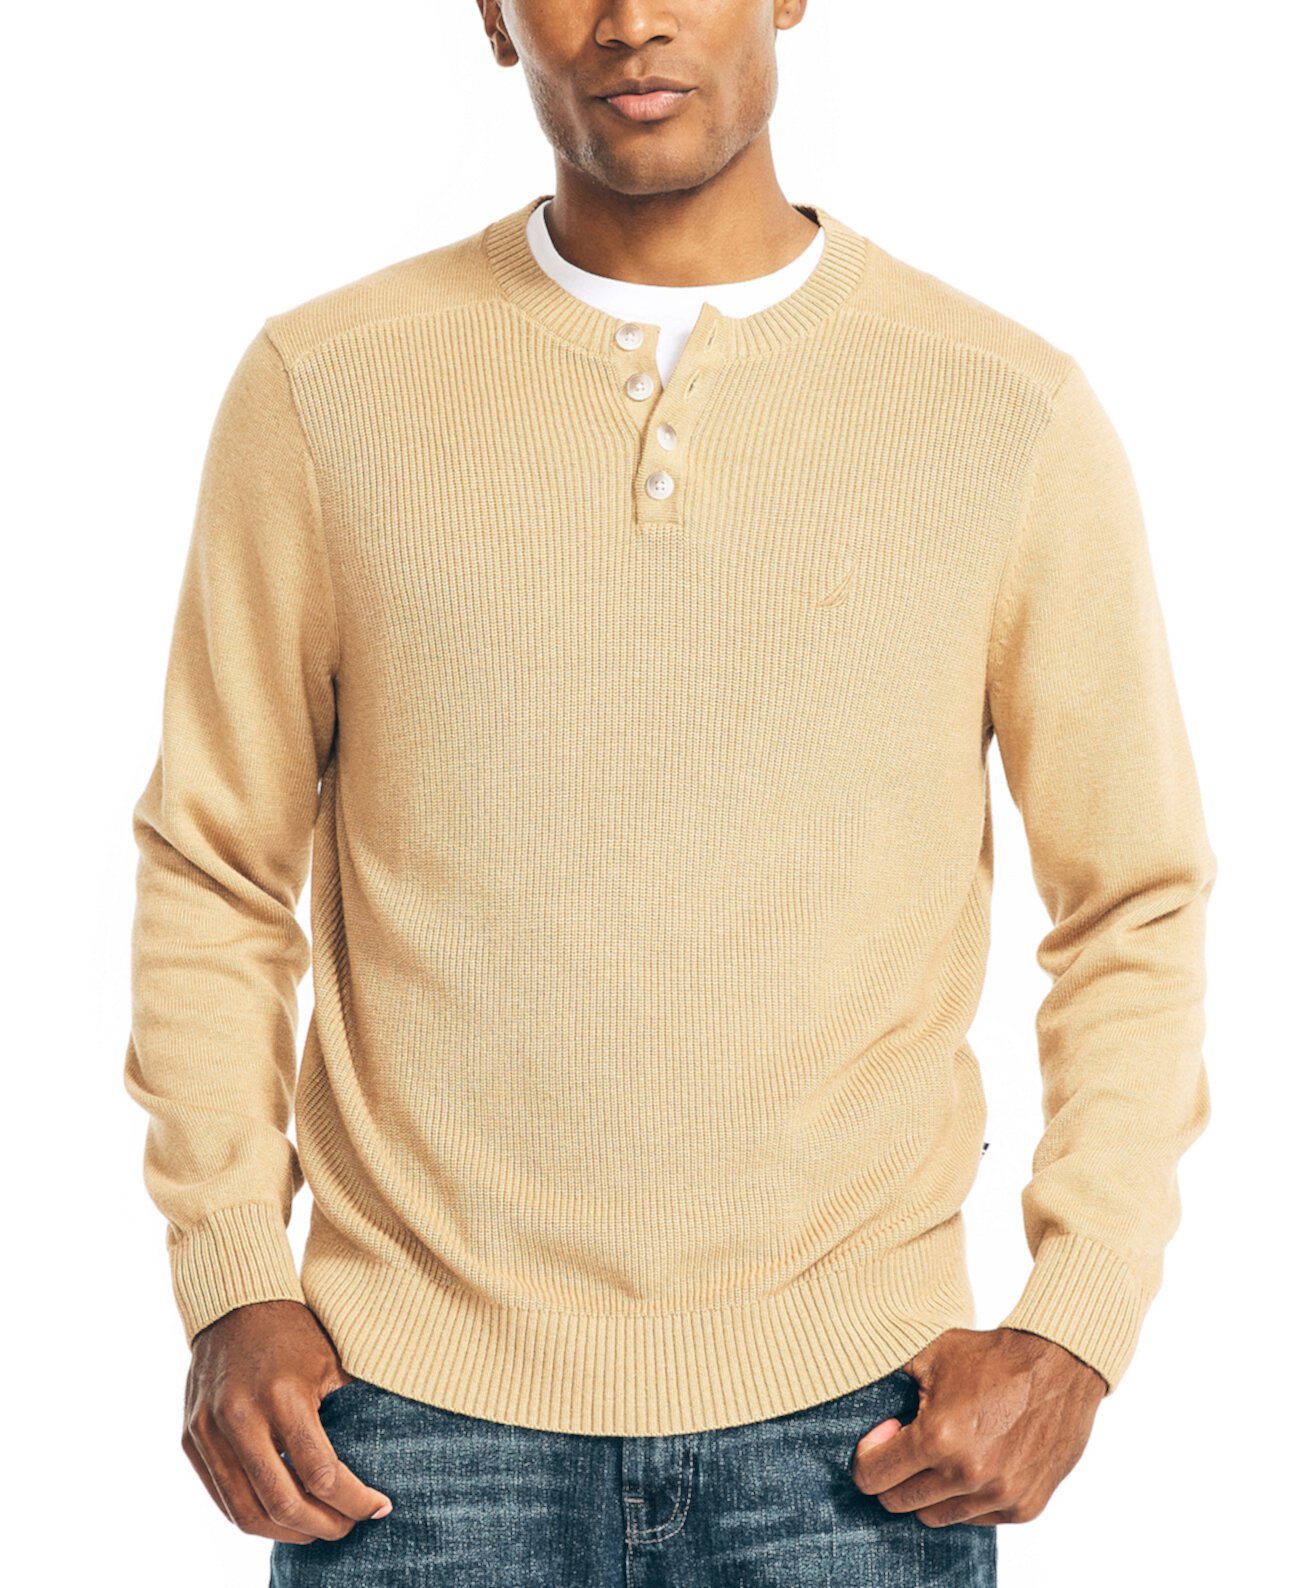 Мужской текстурированный свитер на пуговицах, изготовленный экологически безопасным способом Nautica